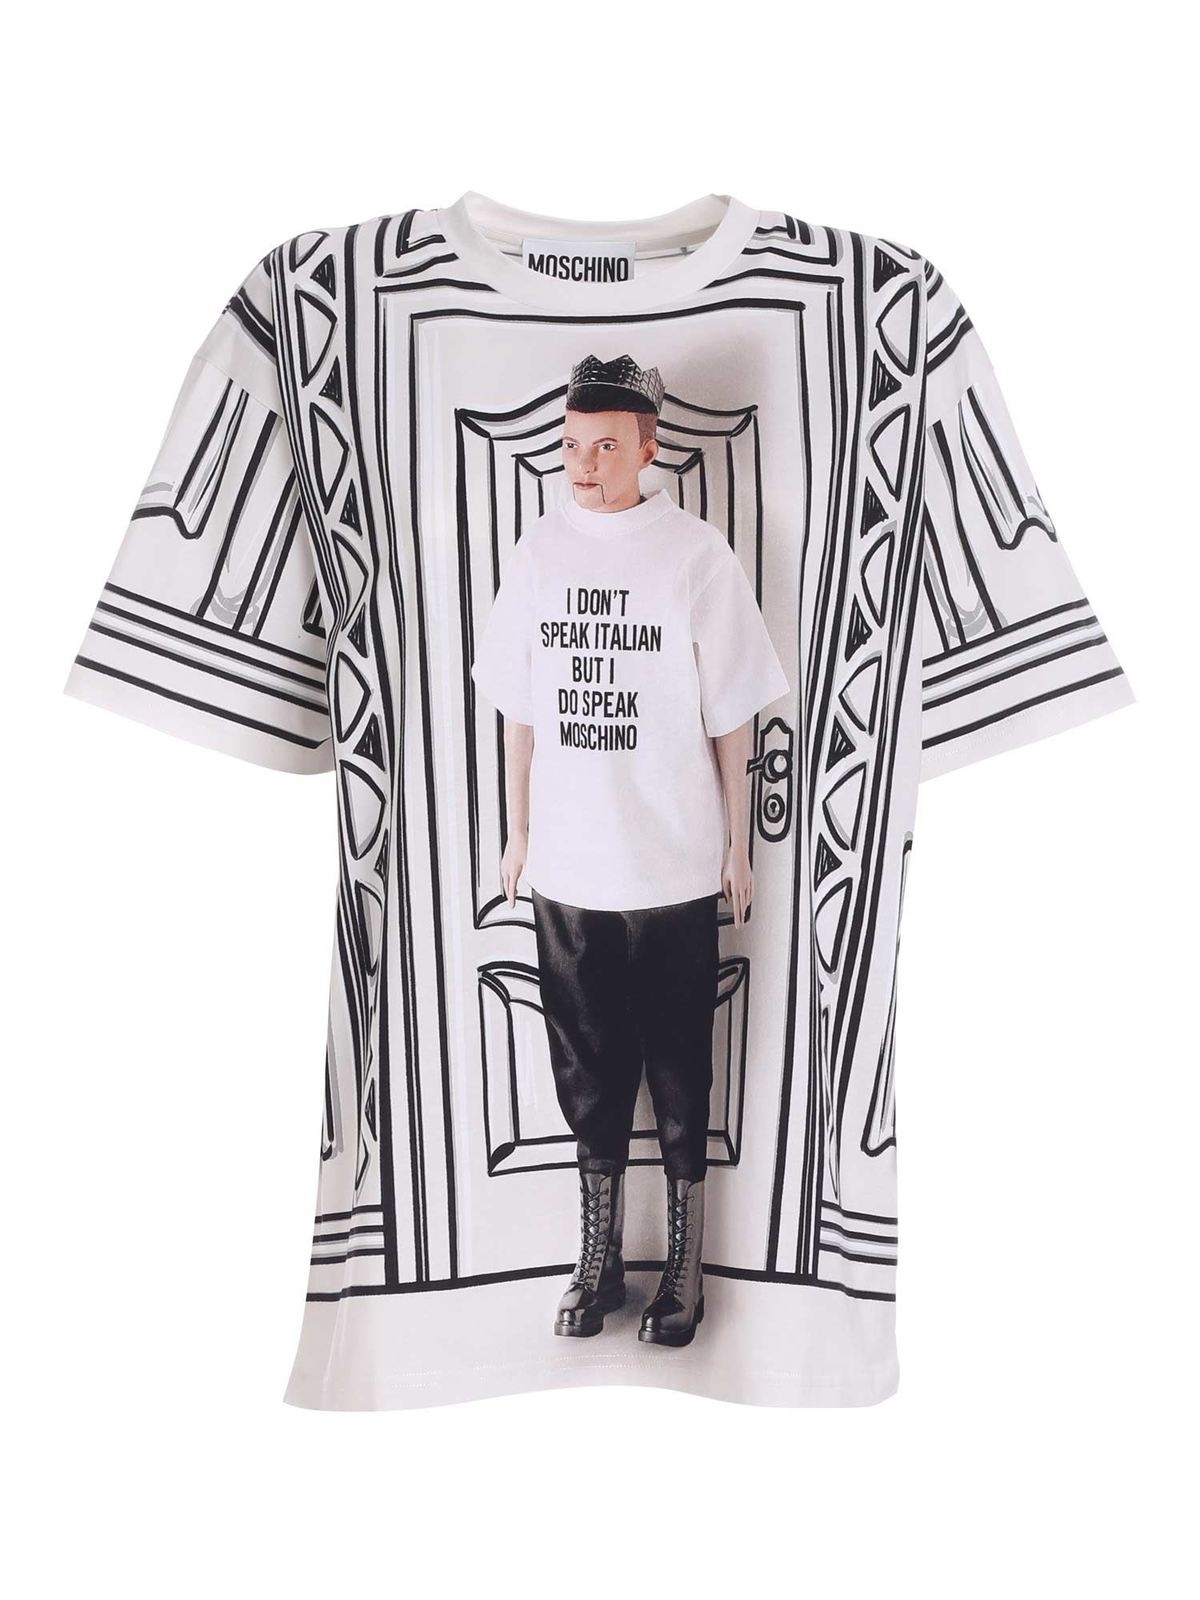 Tilgivende Tordenvejr oprindelse T-shirts Moschino - Printed T-shirt in black and white - 071604403888